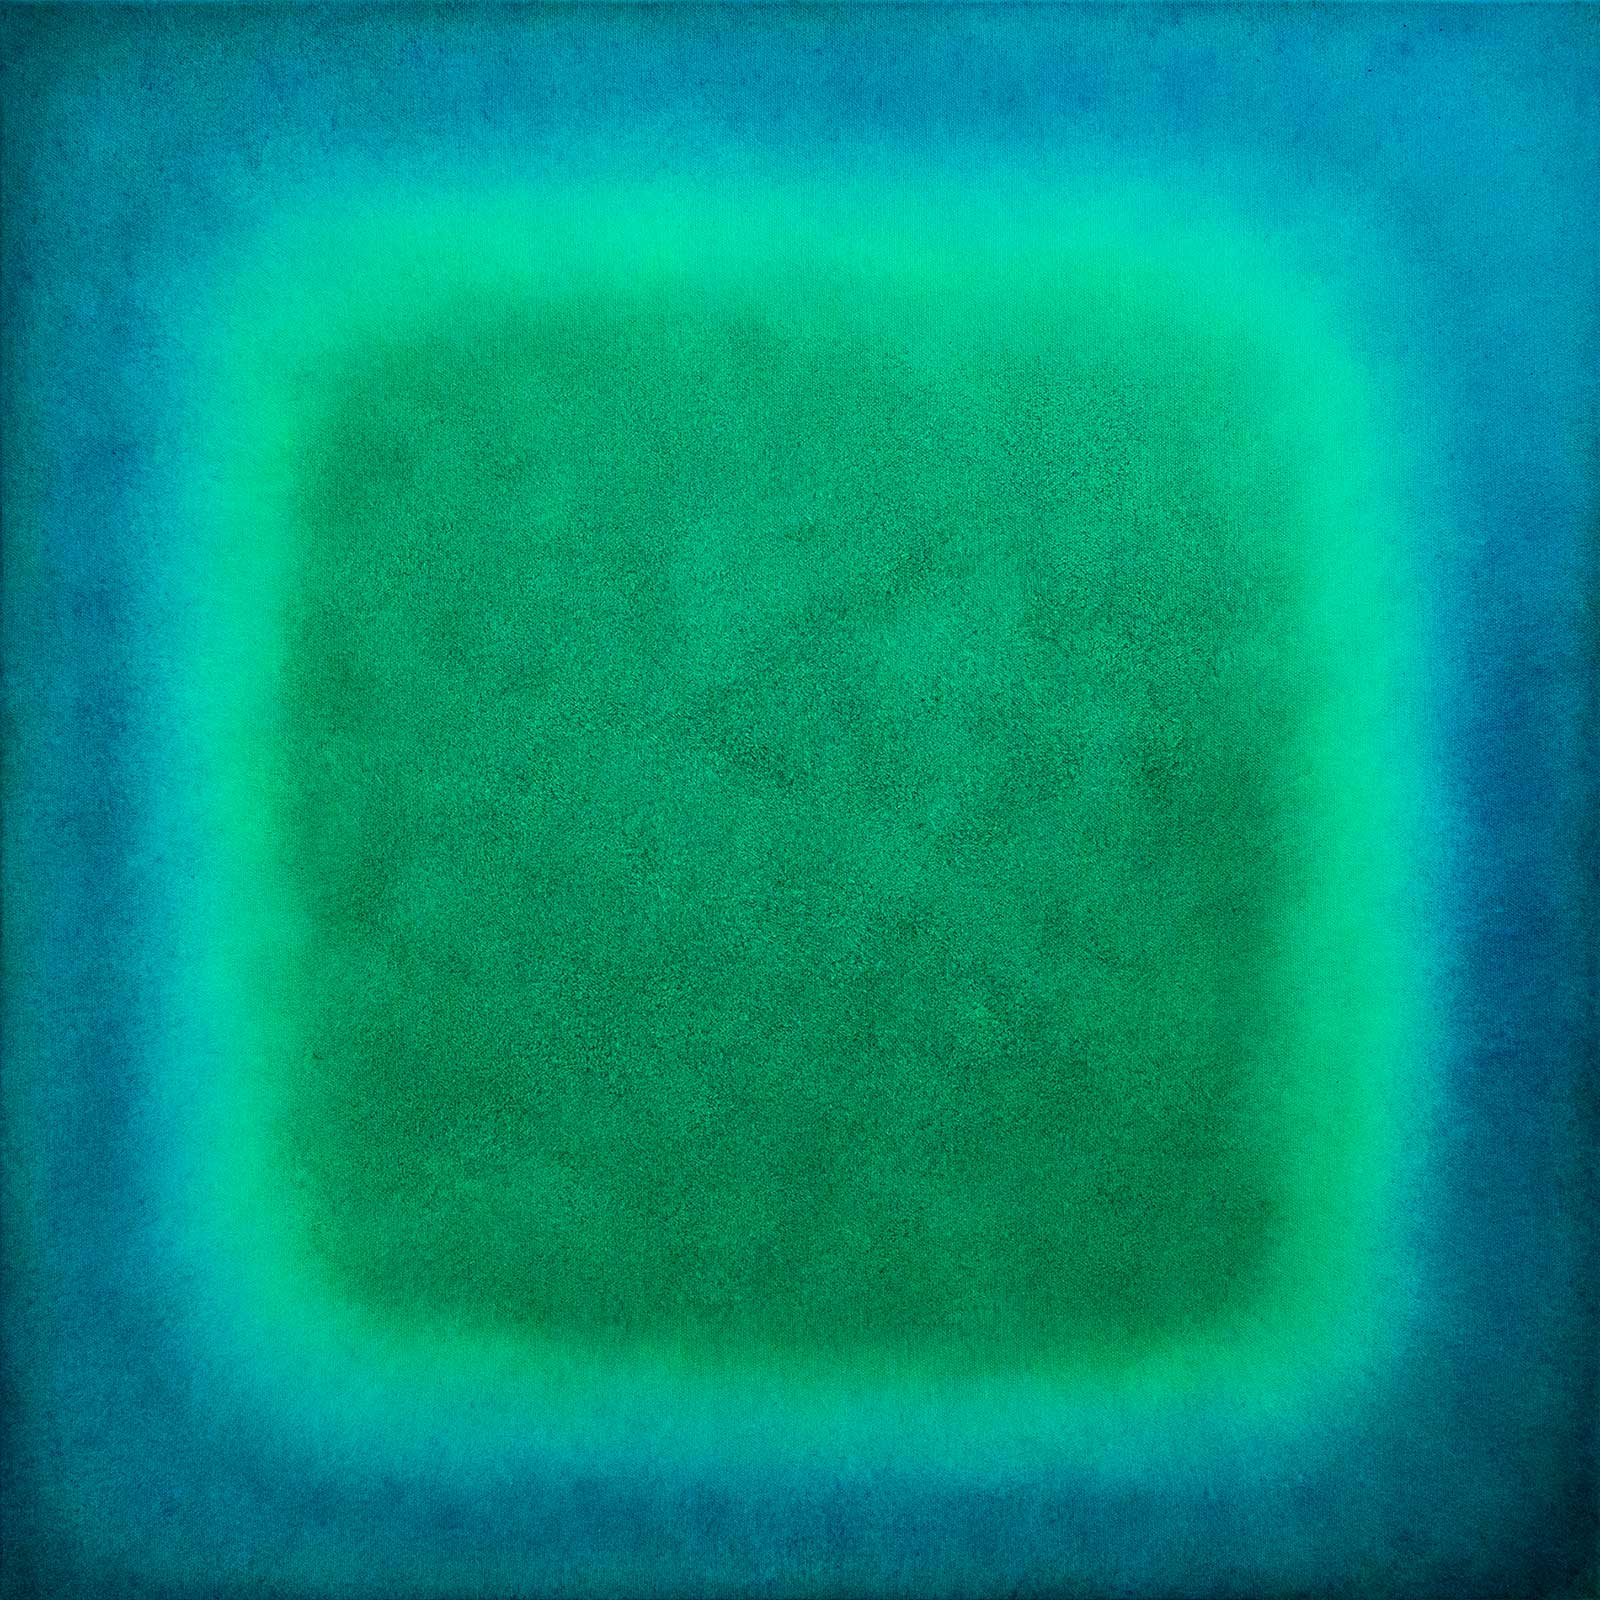 smaragd turqouise | Öl auf Leinwand | 2020 | 80 x 80 cm